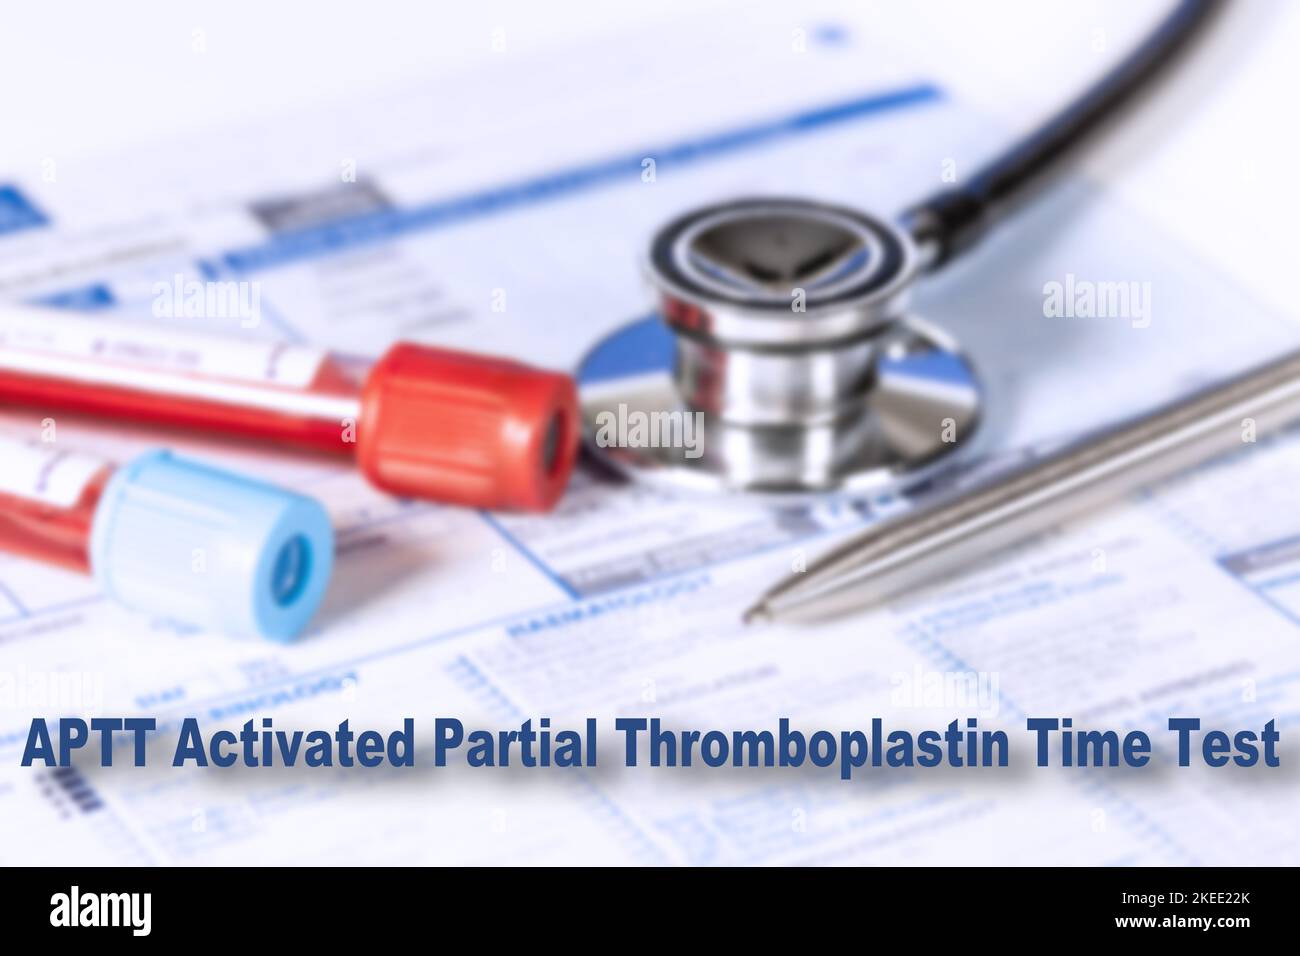 Test de temps de thromboplastine partielle activé, image conceptuelle Banque D'Images